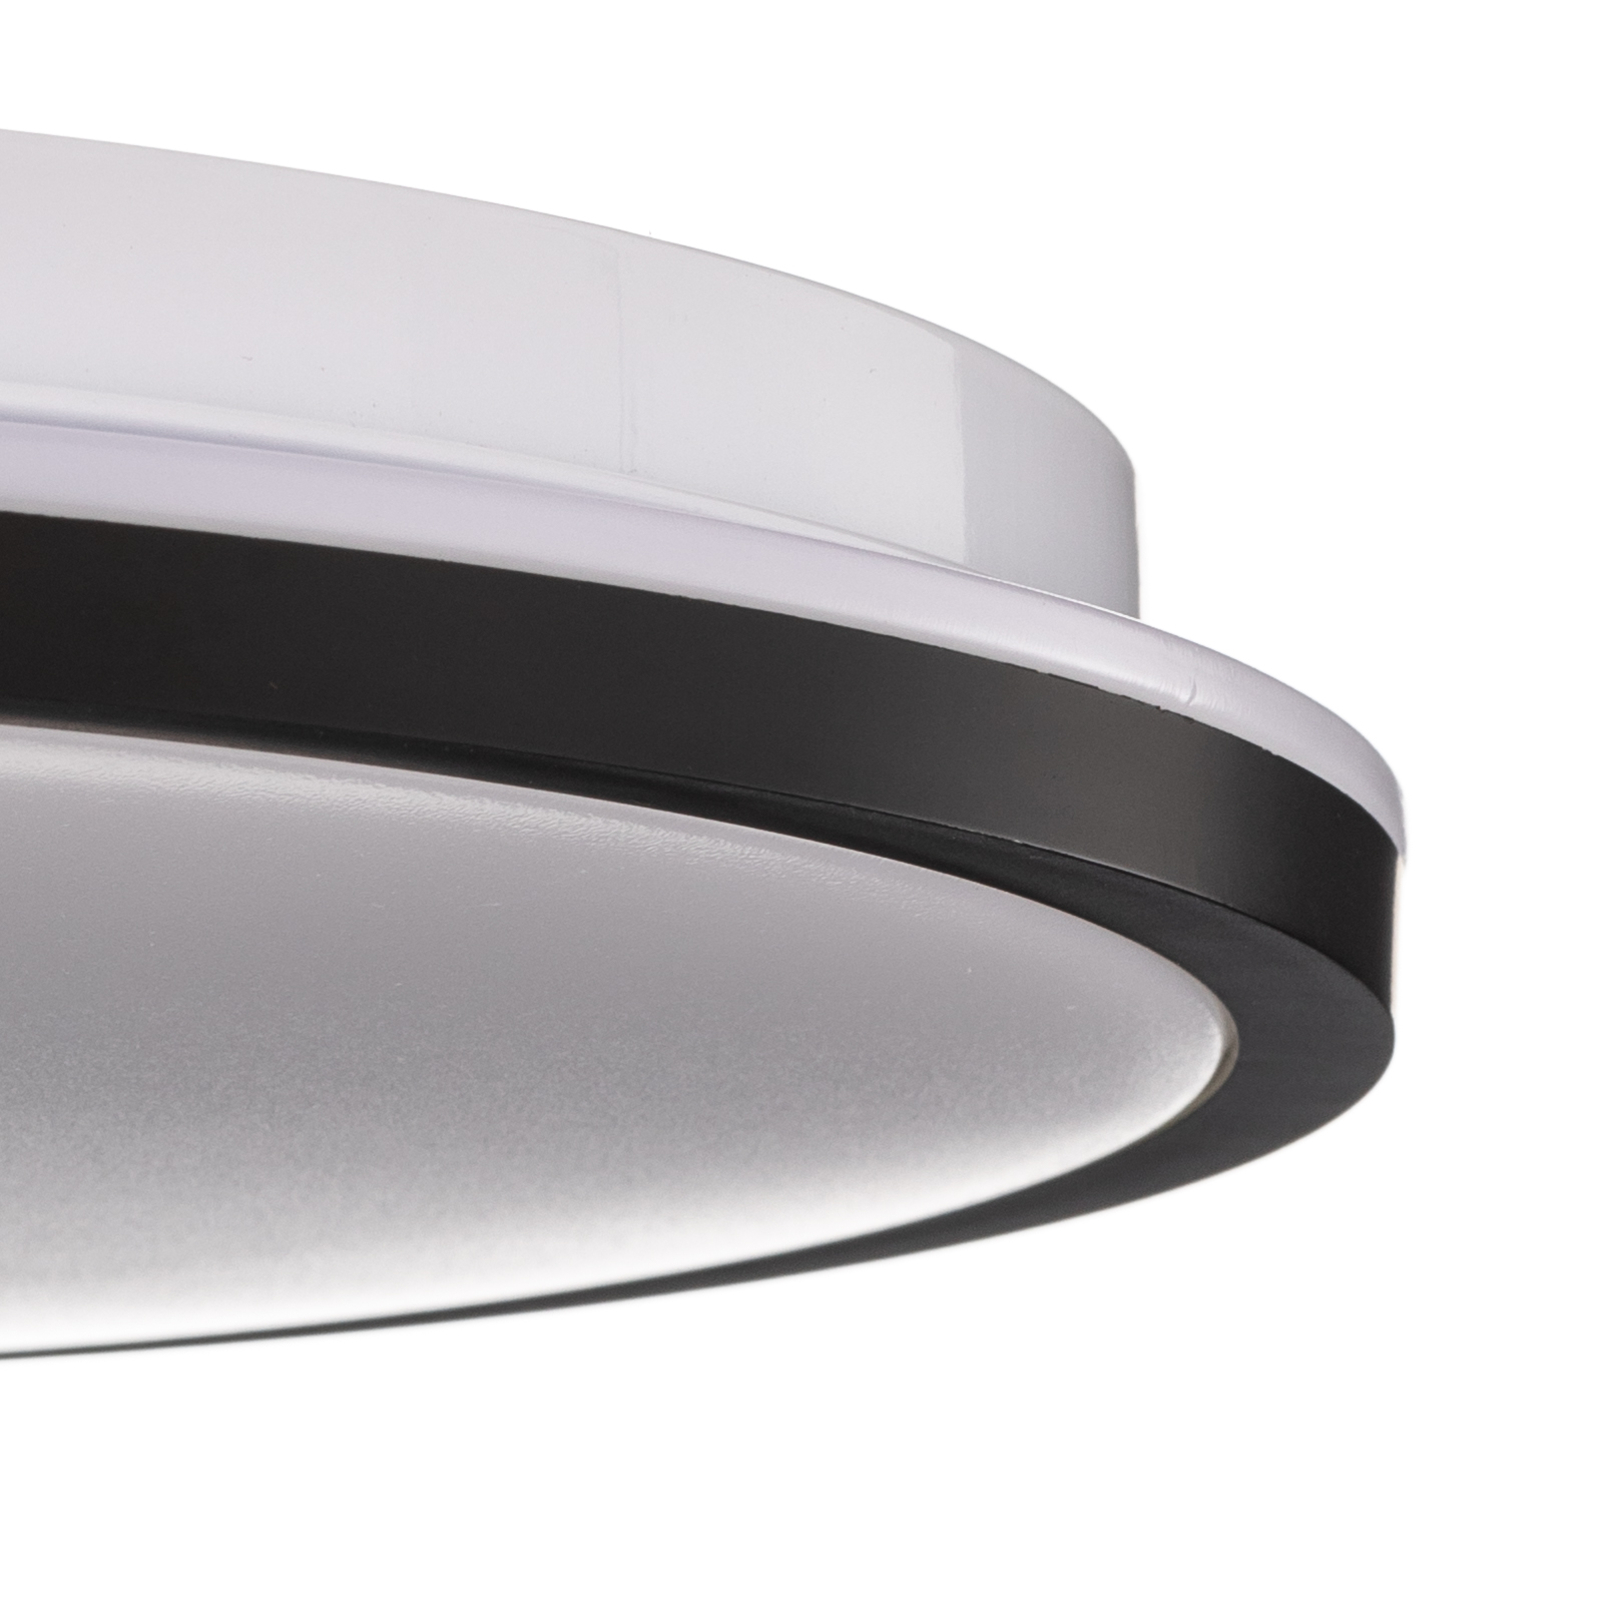 LED ceiling lamp Lana, backlit effect Ø28 black